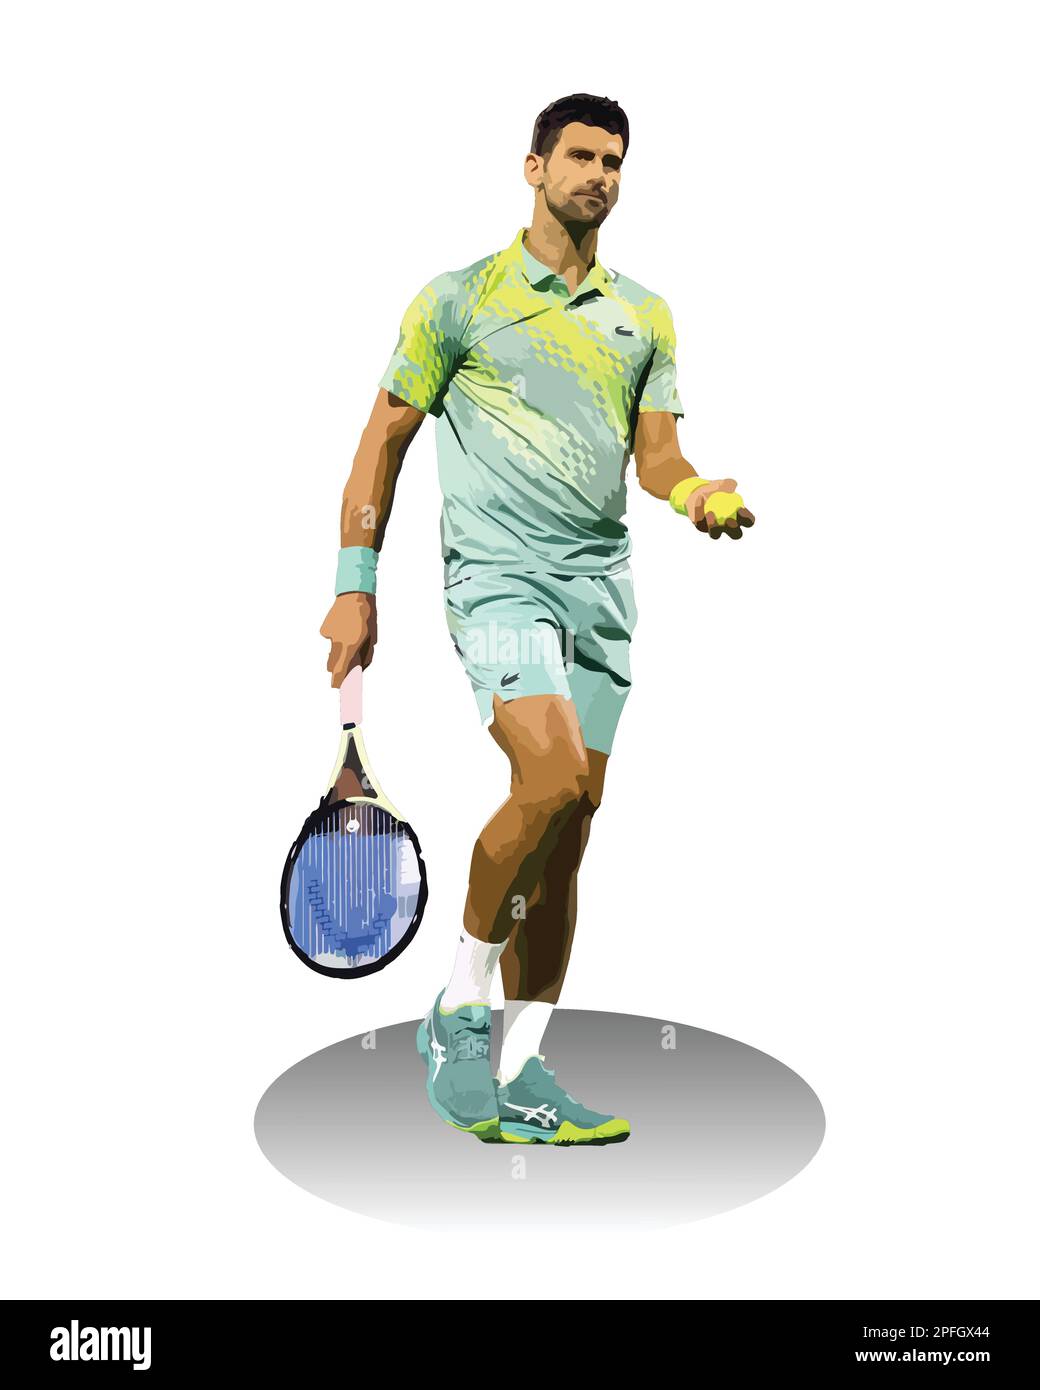 Novak Djokovic giocatore di tennis serbo Vector Illustration image Illustrazione Vettoriale